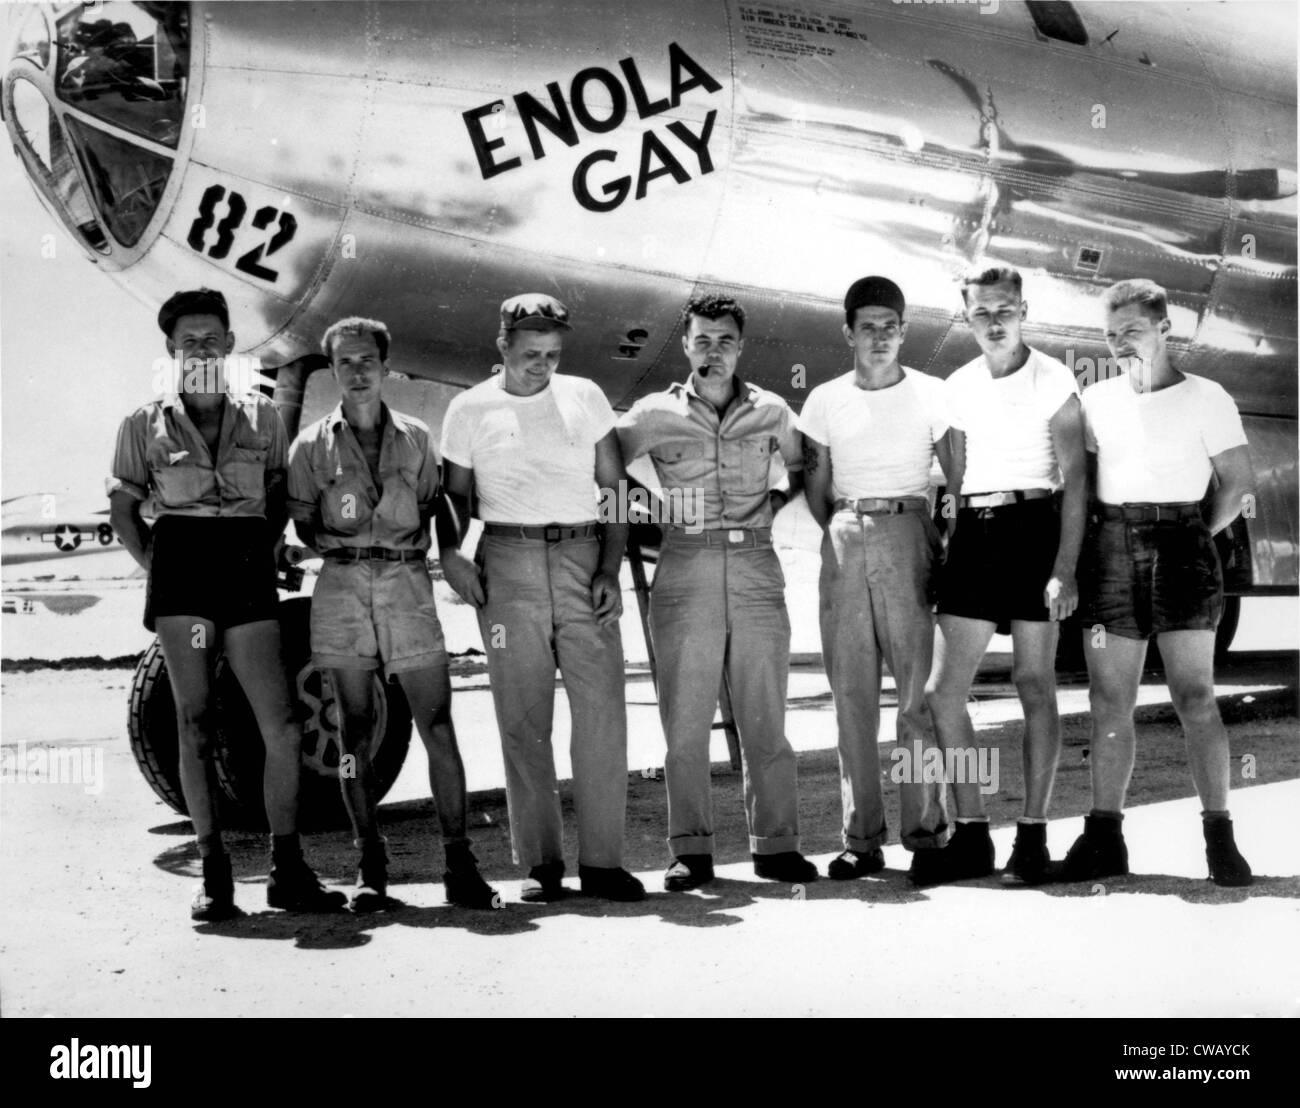 Enola Gay. El suelo de la tripulación del B-29 "Enola Gay" que atom-bombardearon Hiroshima, Japón. El coronel Paul W. Tibbets, el piloto es el Foto de stock